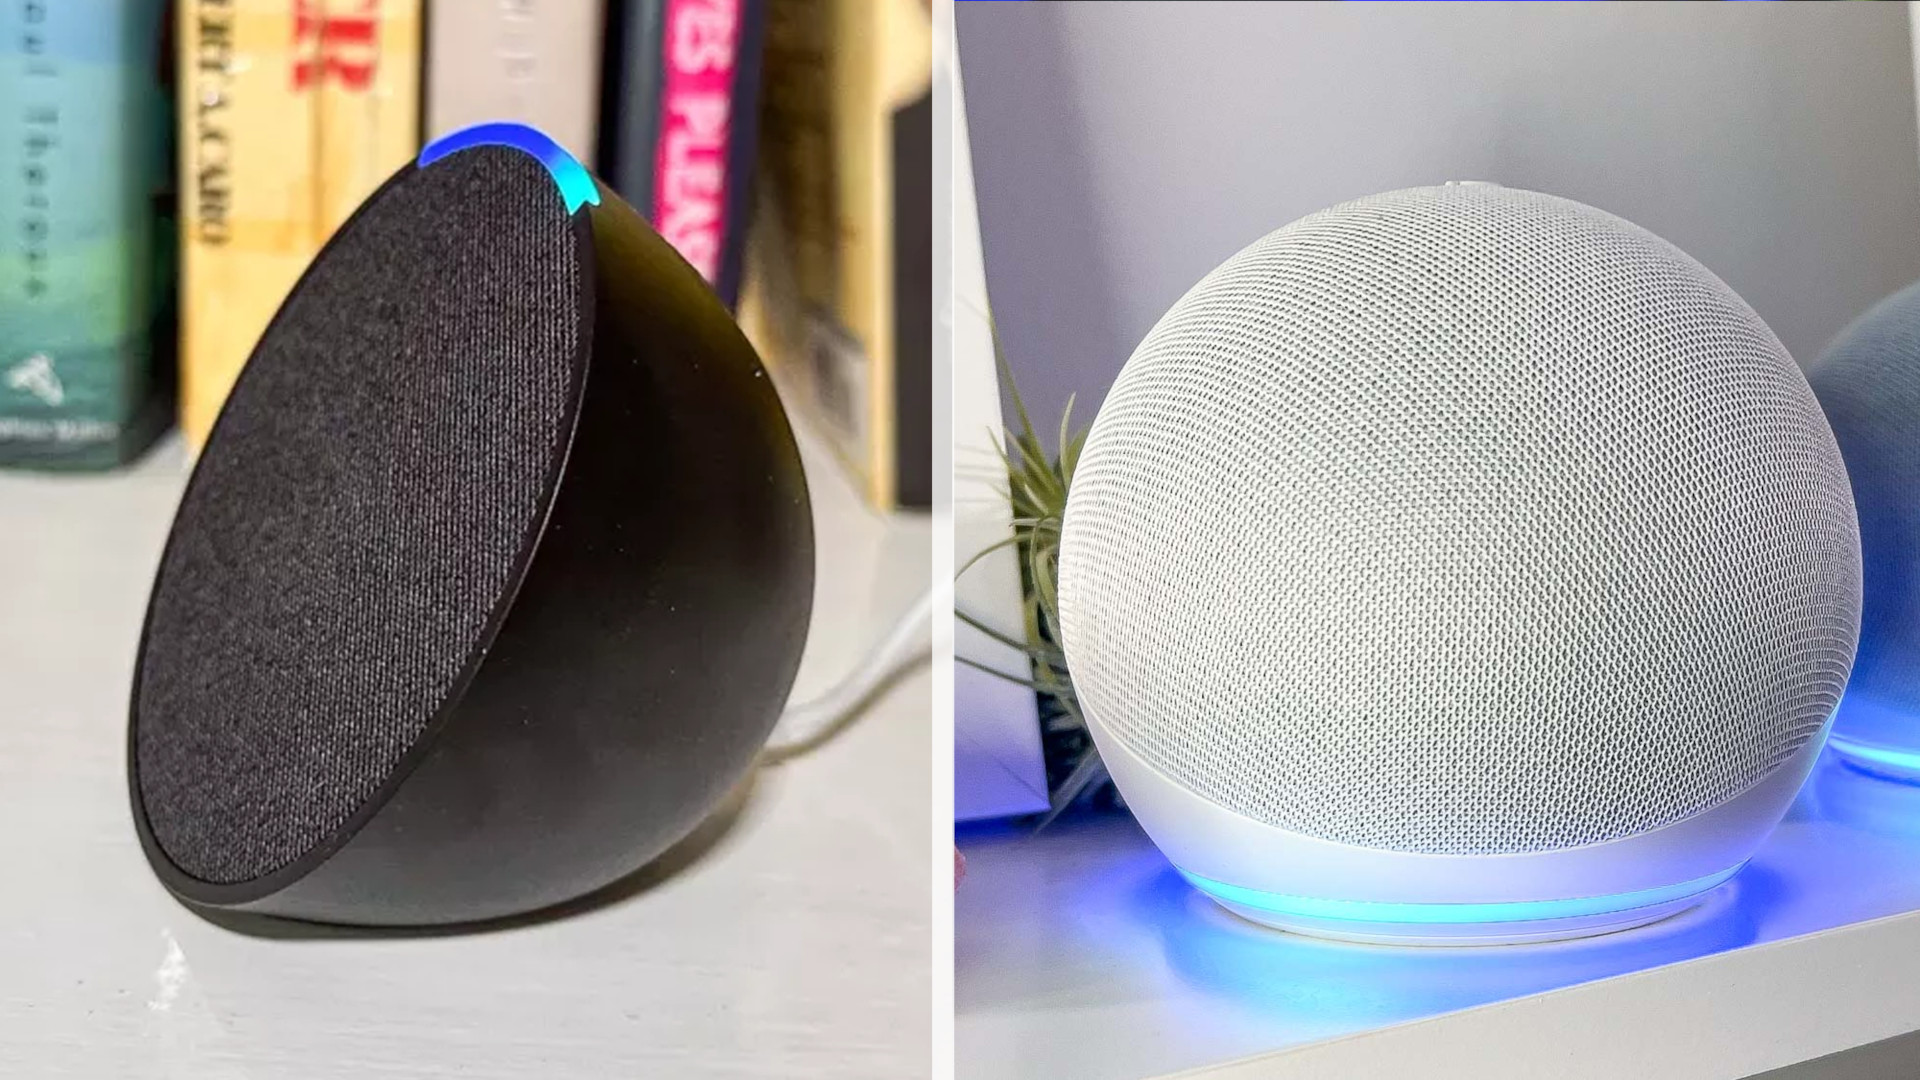 Echo Pop vs Echo Dot – which smart speaker should you